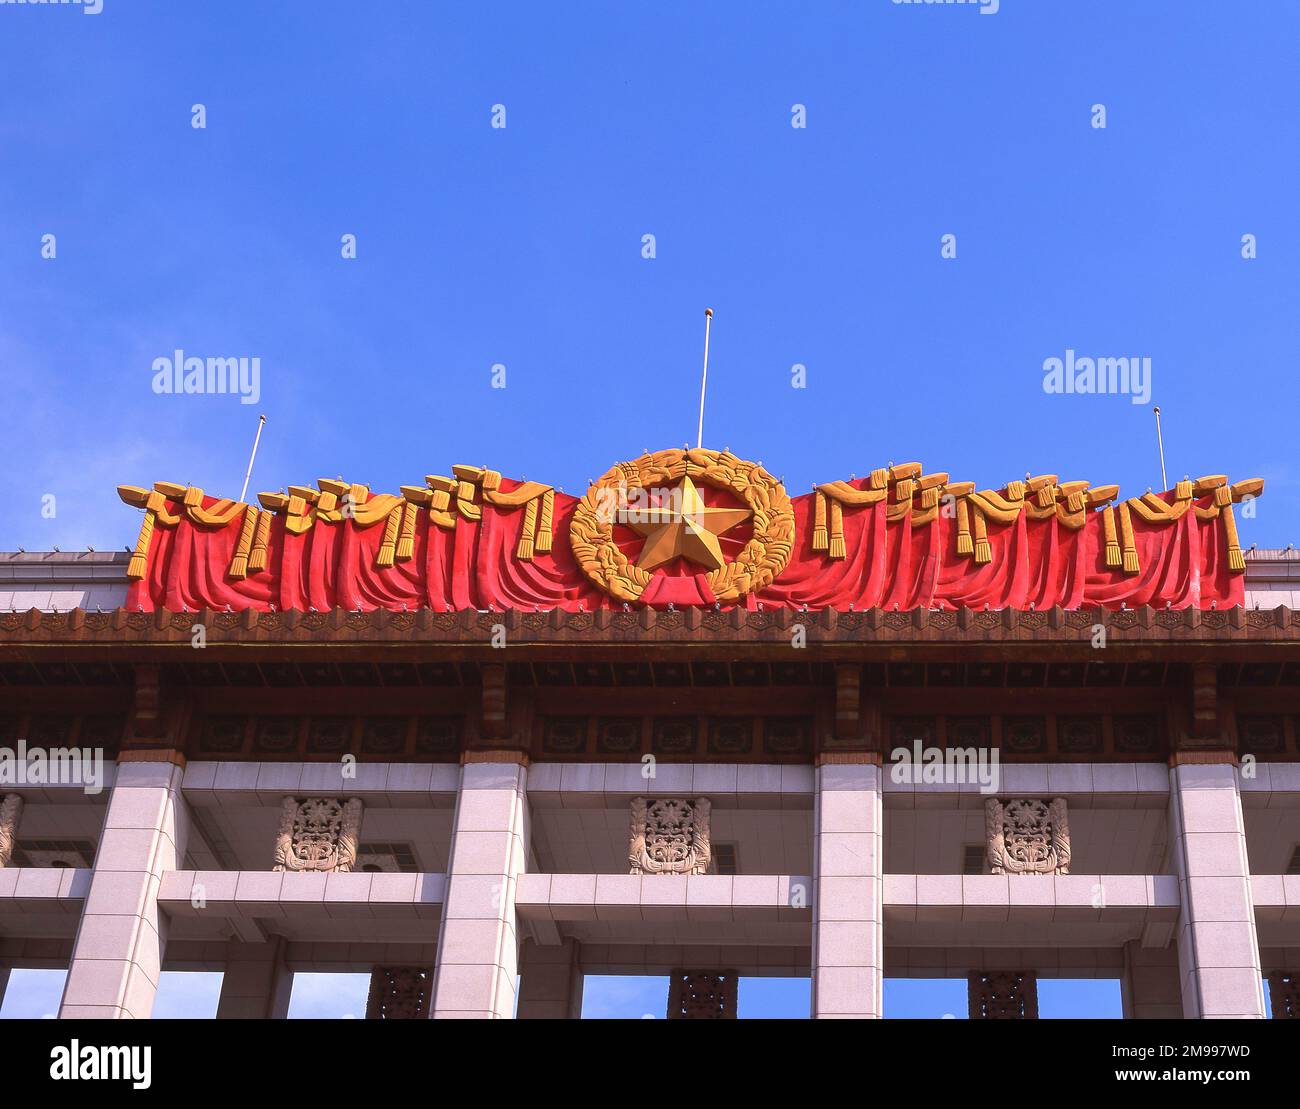 Logo du Parti communiste chinois (PCC) au sommet du Musée national de Chine sur la place Tiananmen, Dongcheng, Beijing, République populaire de Chine Banque D'Images